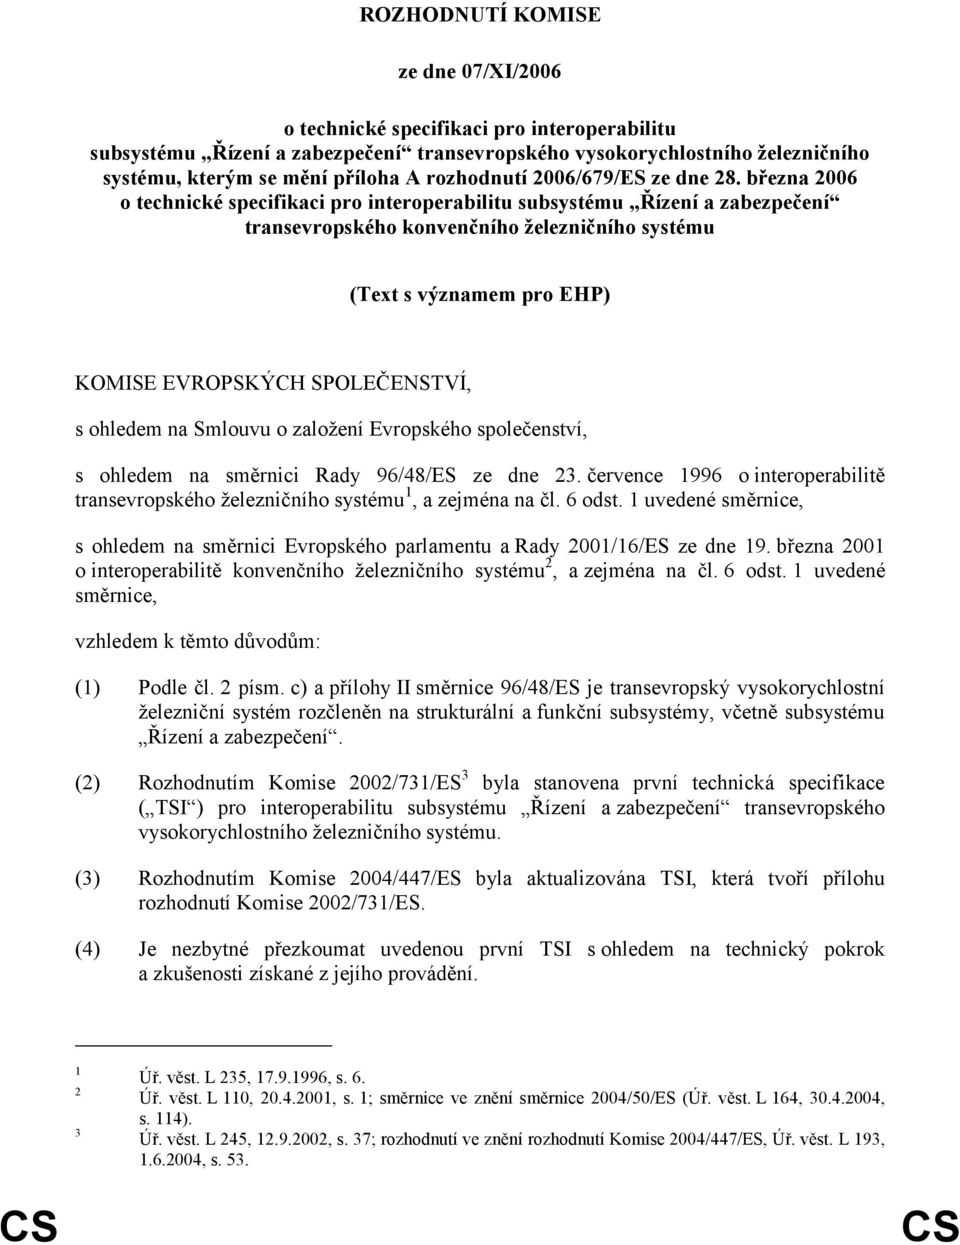 března 2006 o technické specifikaci pro interoperabilitu subsystému Řízení a zabezpečení transevropského konvenčního železničního systému (Text s významem pro EHP) KOMISE EVROPSKÝCH SPOLEČENSTVÍ, s